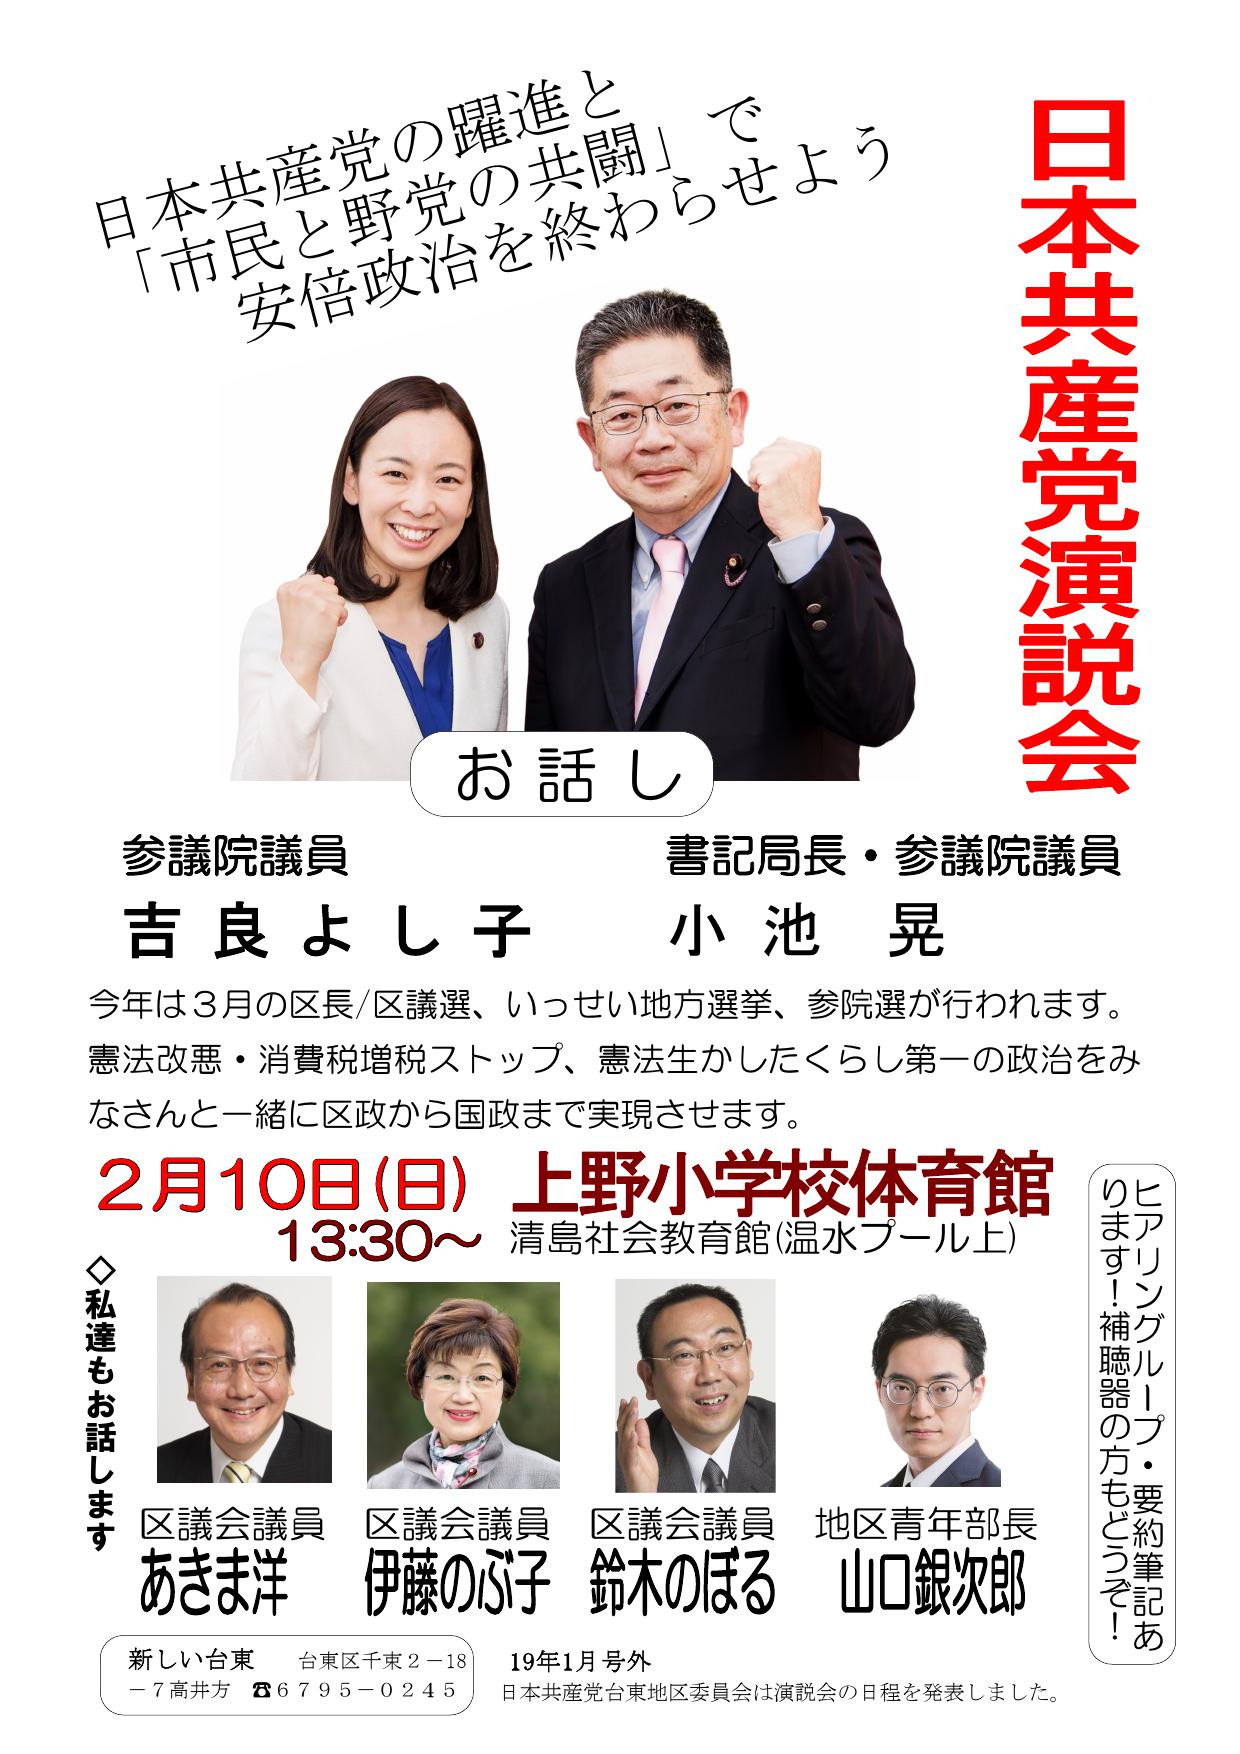 2月10日(日)日本共産党 台東区演説会